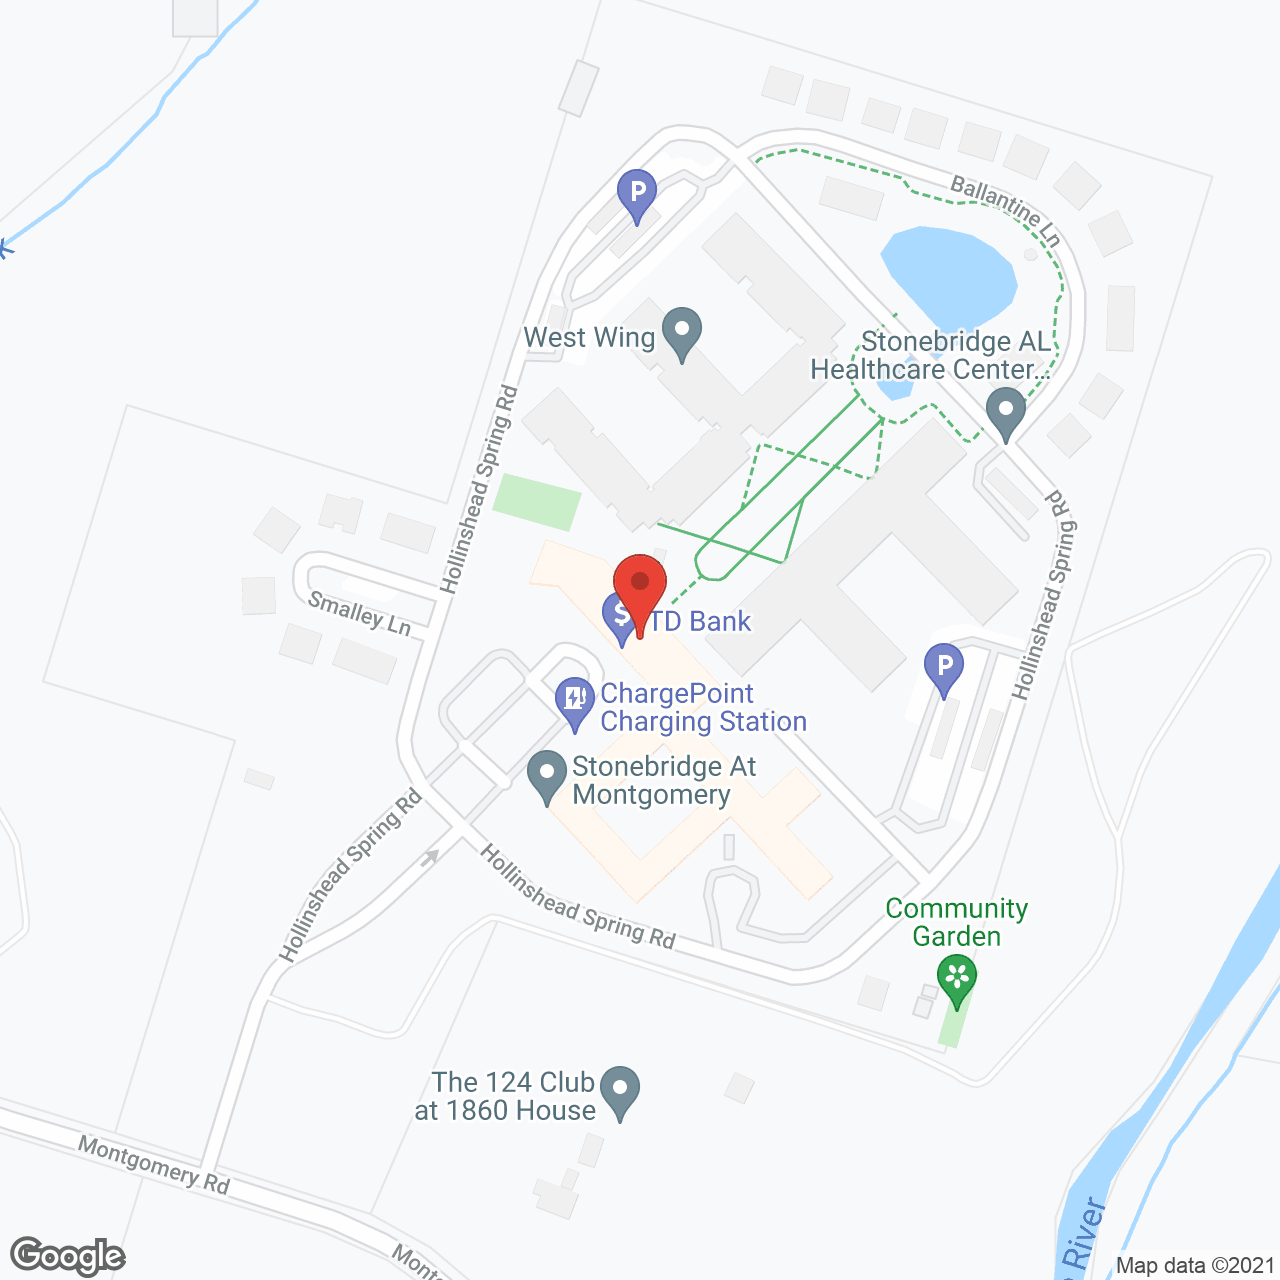 Stonebridge At Montgomery in google map